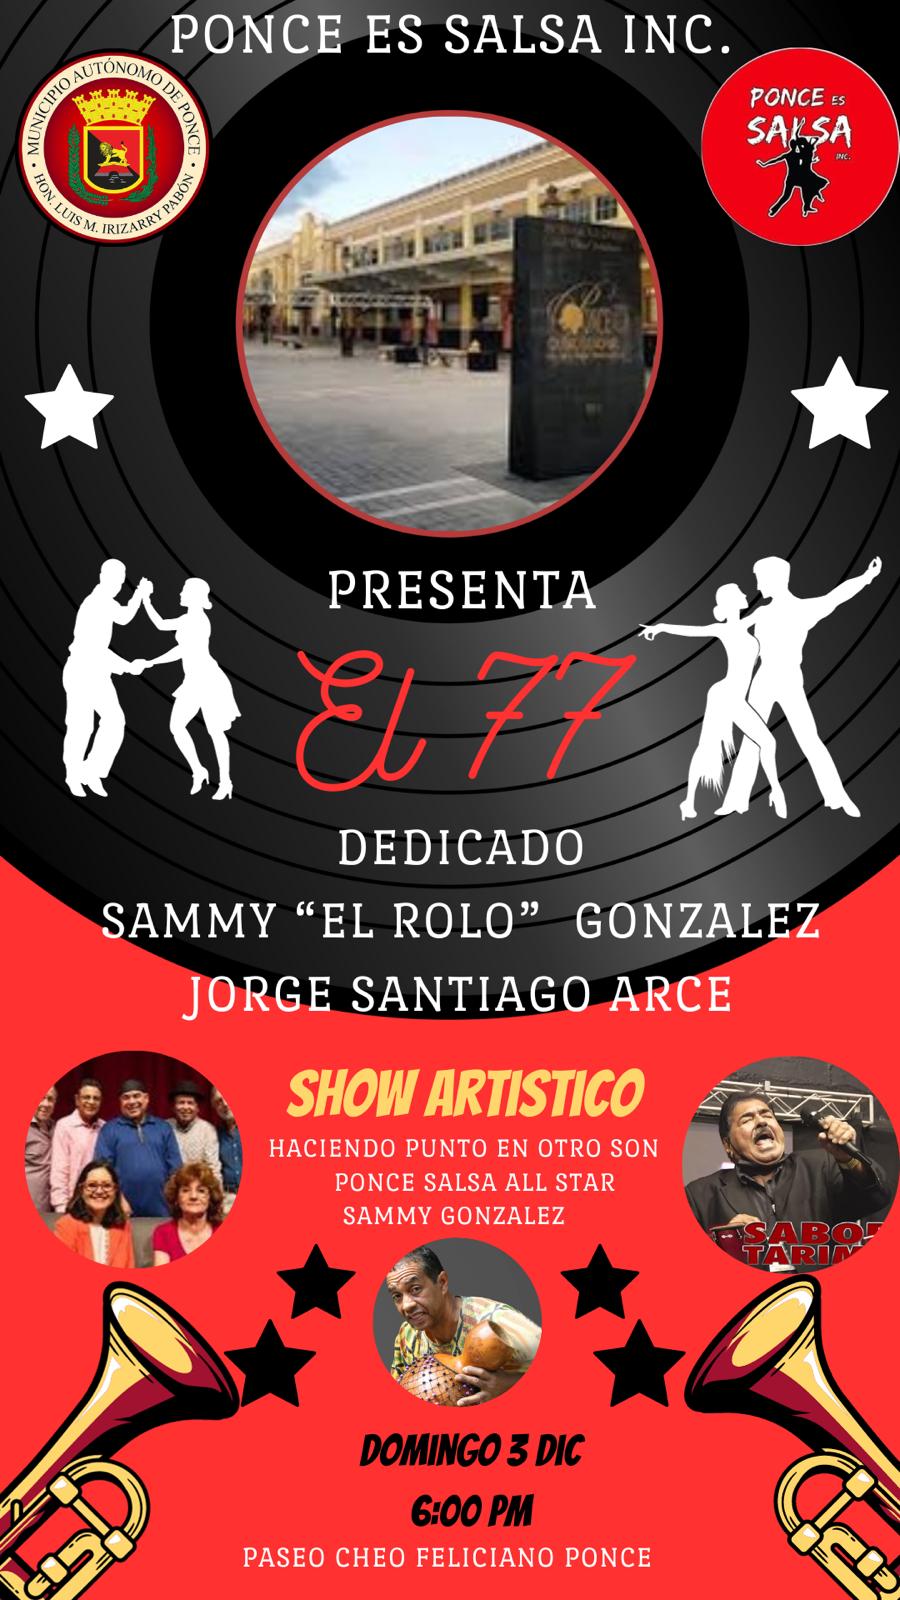 Invitación al evento Ponce es Salsa presenta El 77